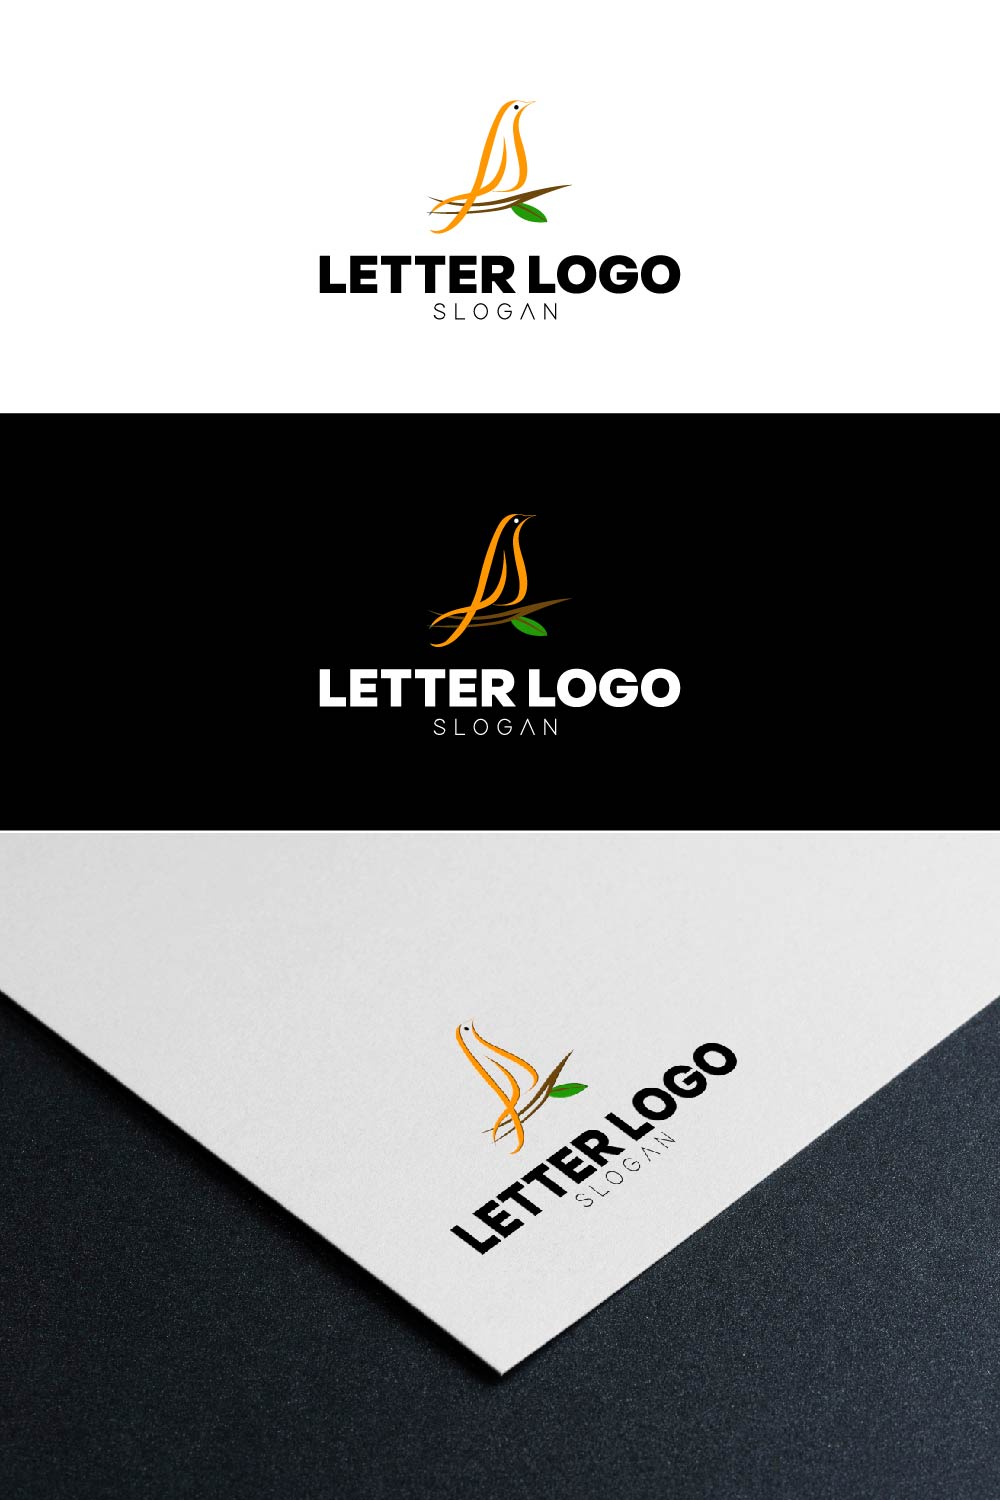 Bird Letter Logo Pinterest Collage image.